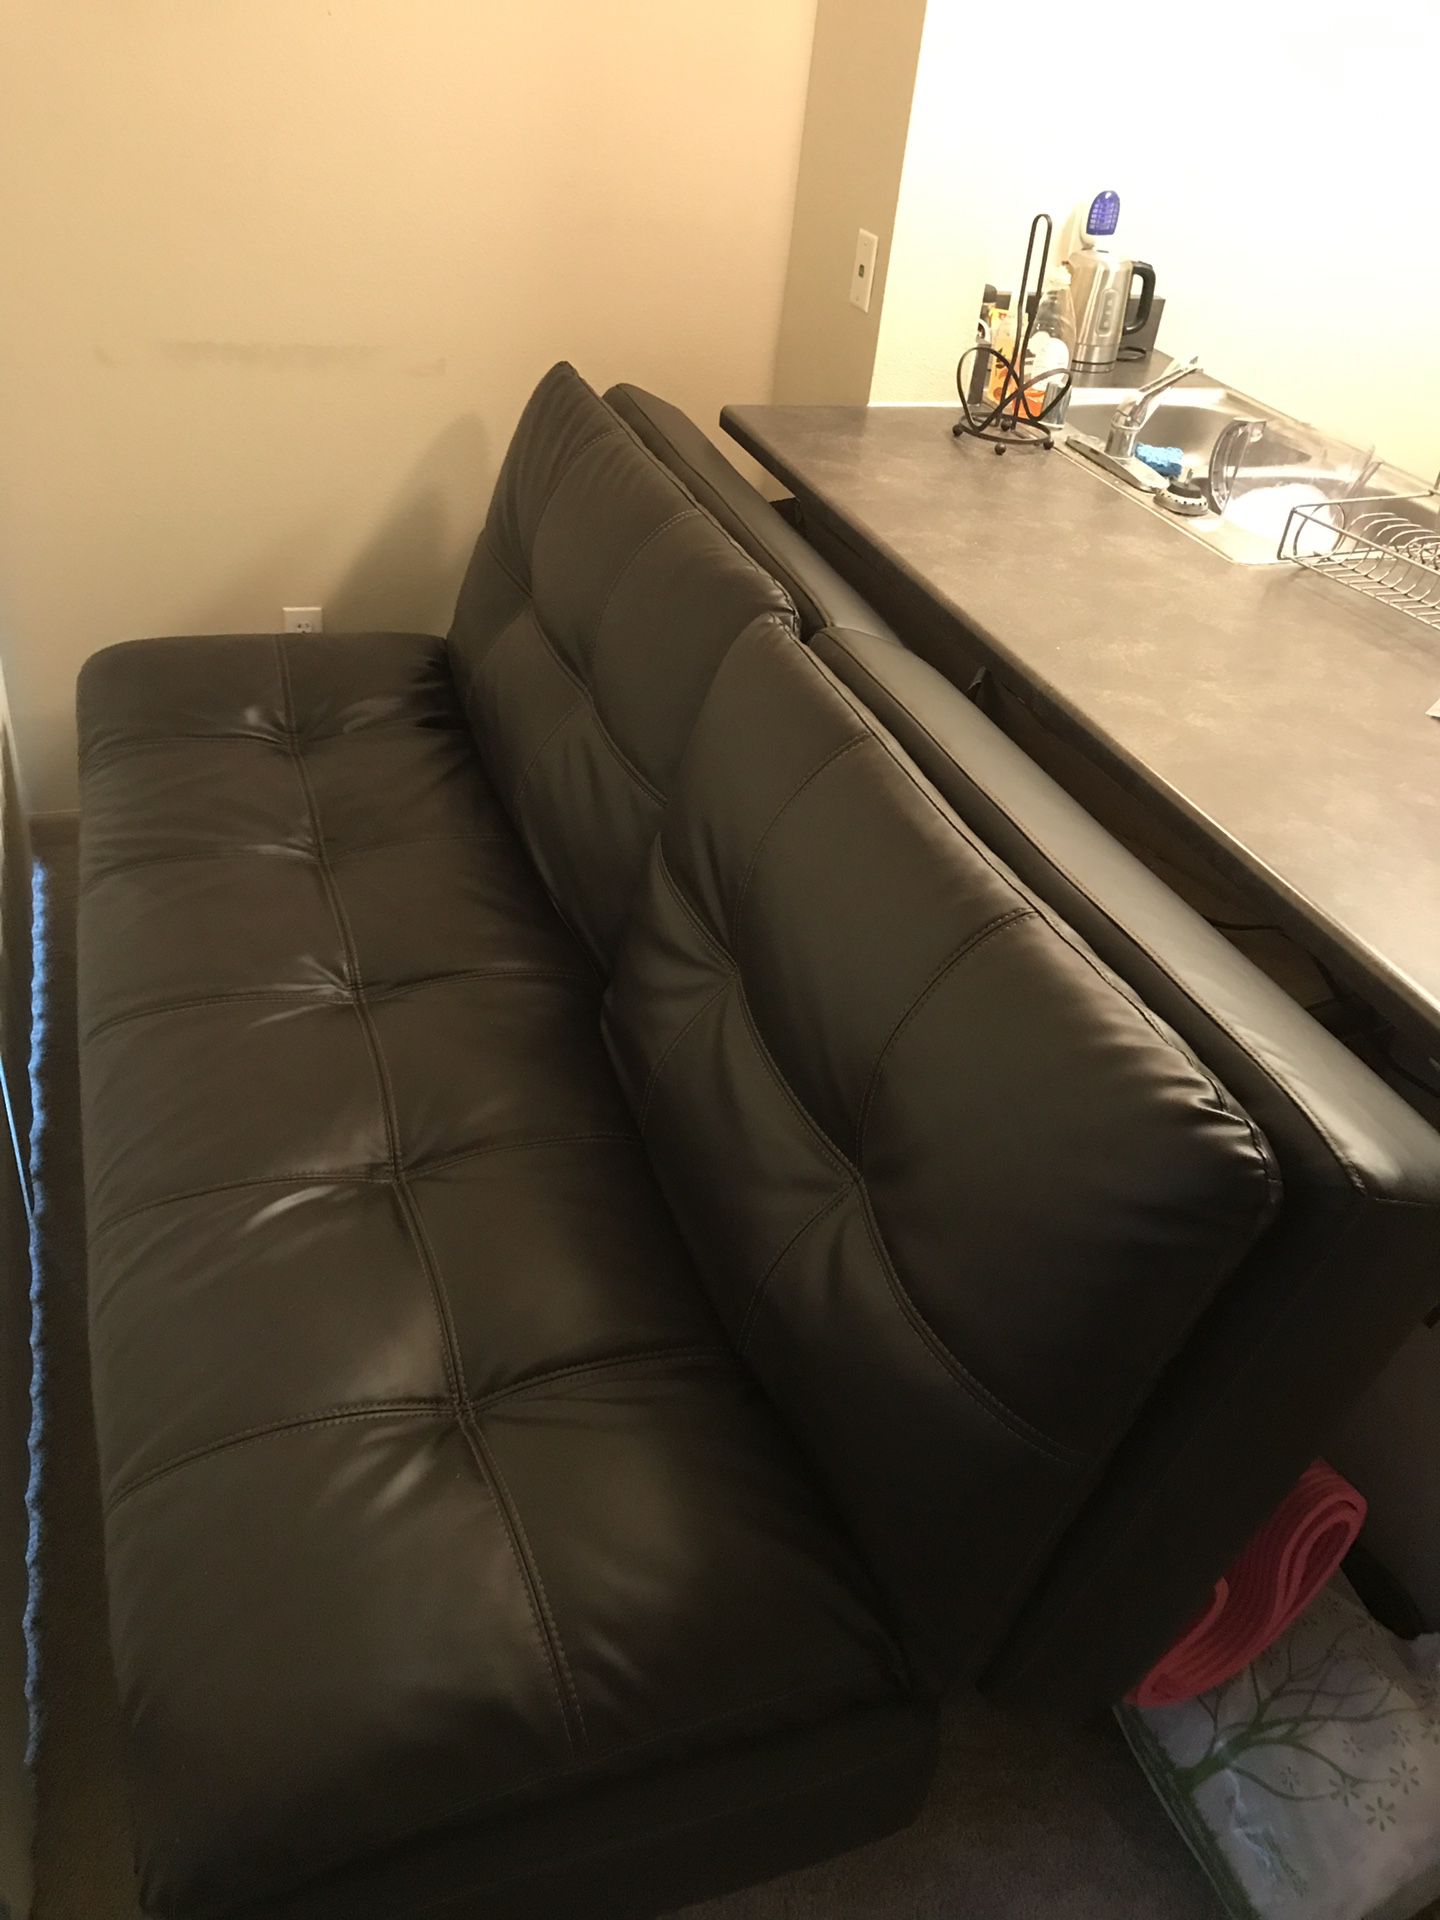 Leather sofa bed/ futon